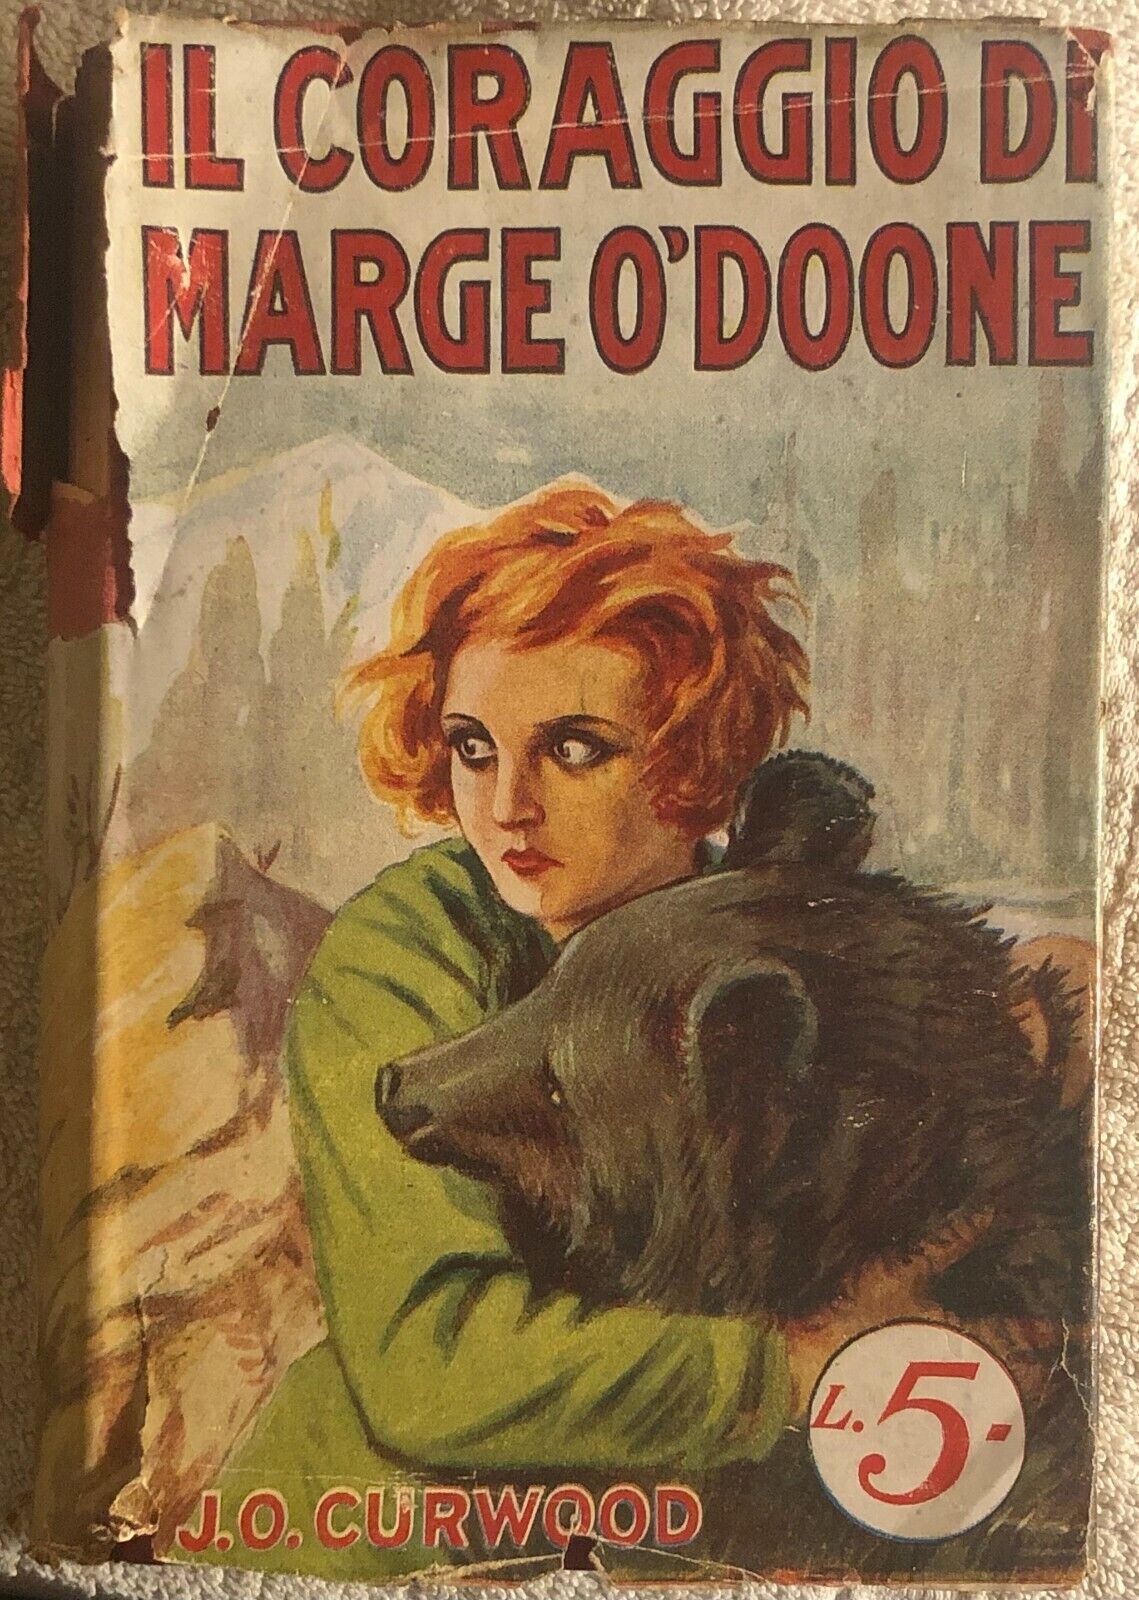  Il coraggio di Marge O?Doone di J.o. Curwood,  1928,  Sonzogno